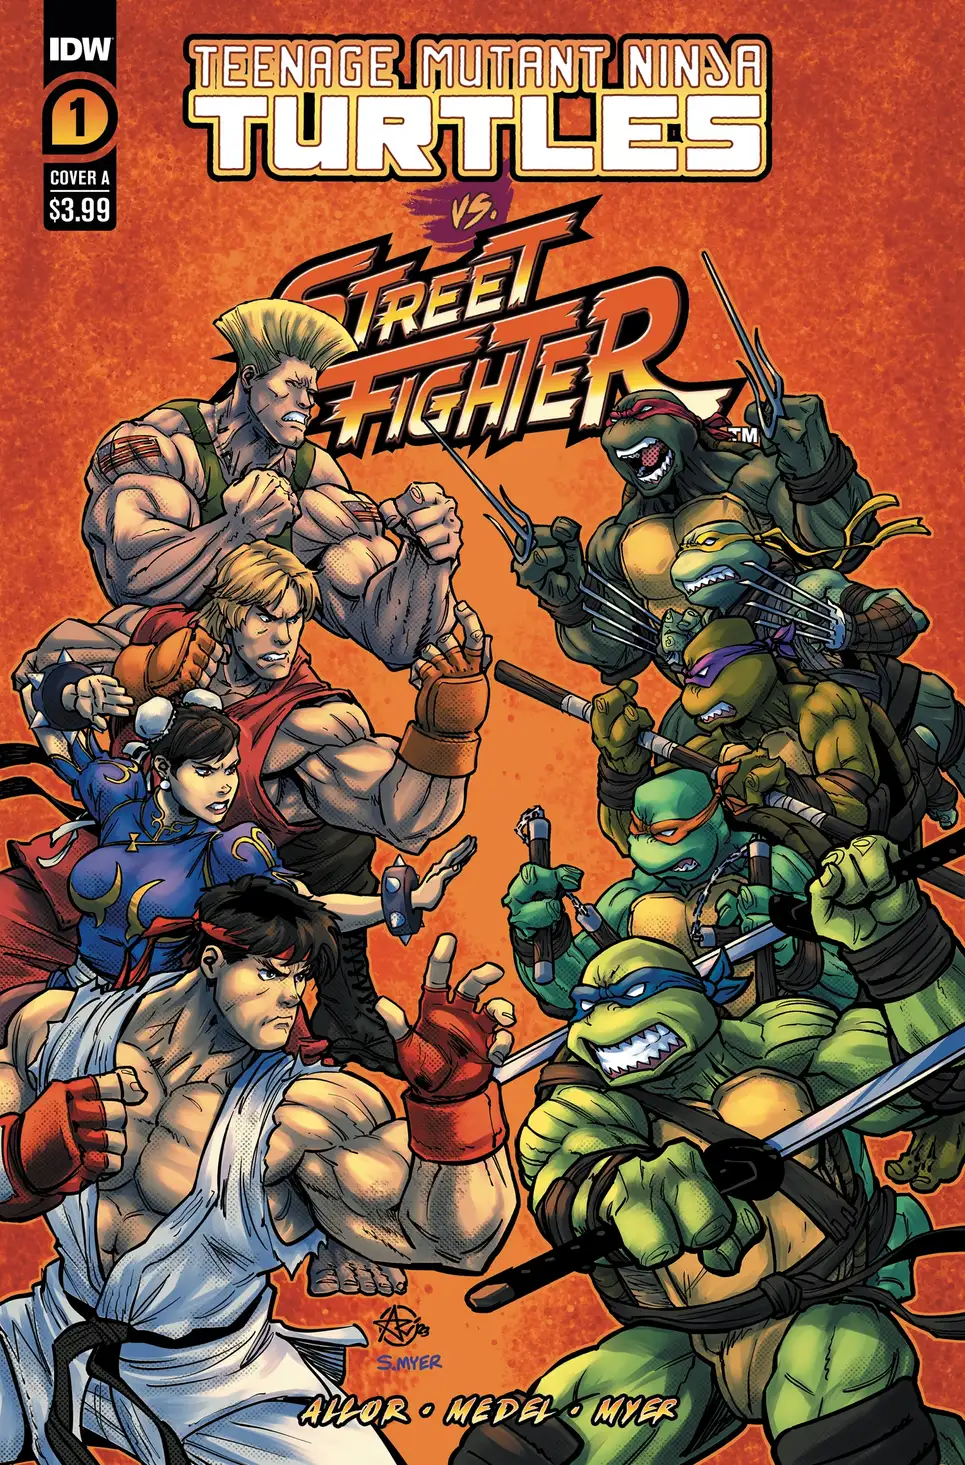 Teenage Mutant Ninja Turtles: Shredder's Revenge - Wikipedia